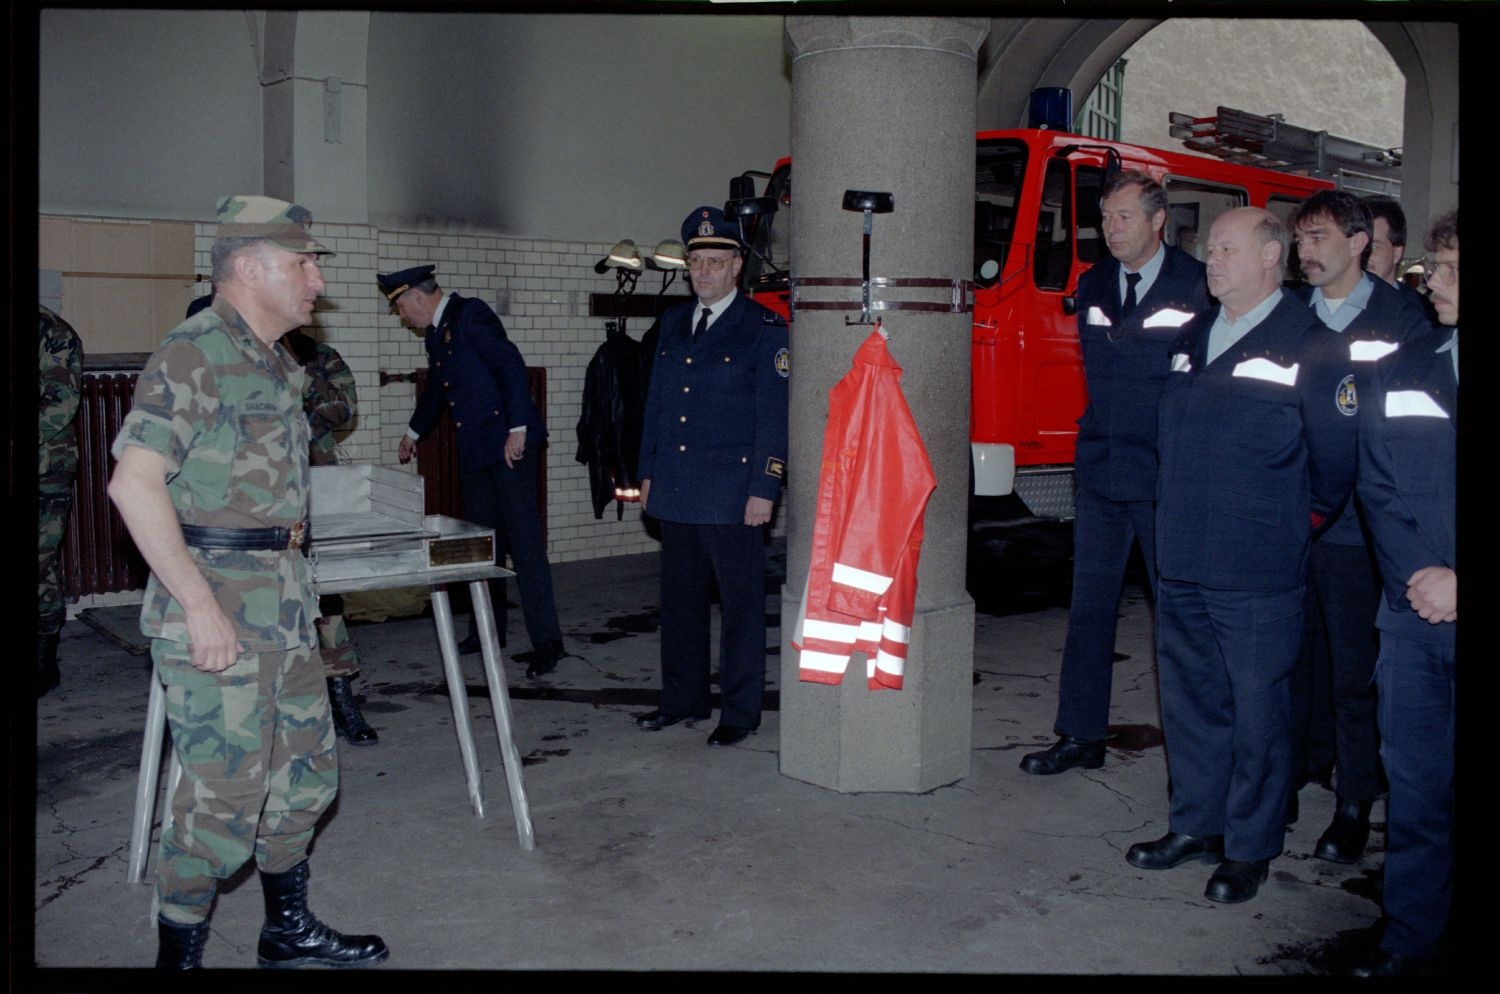 Fotografie: Auszeichnung der West-Berliner Feuerwachen 310 und 320 für 30 Jahre Diensttätigkeit für die U.S. Army in Berlin